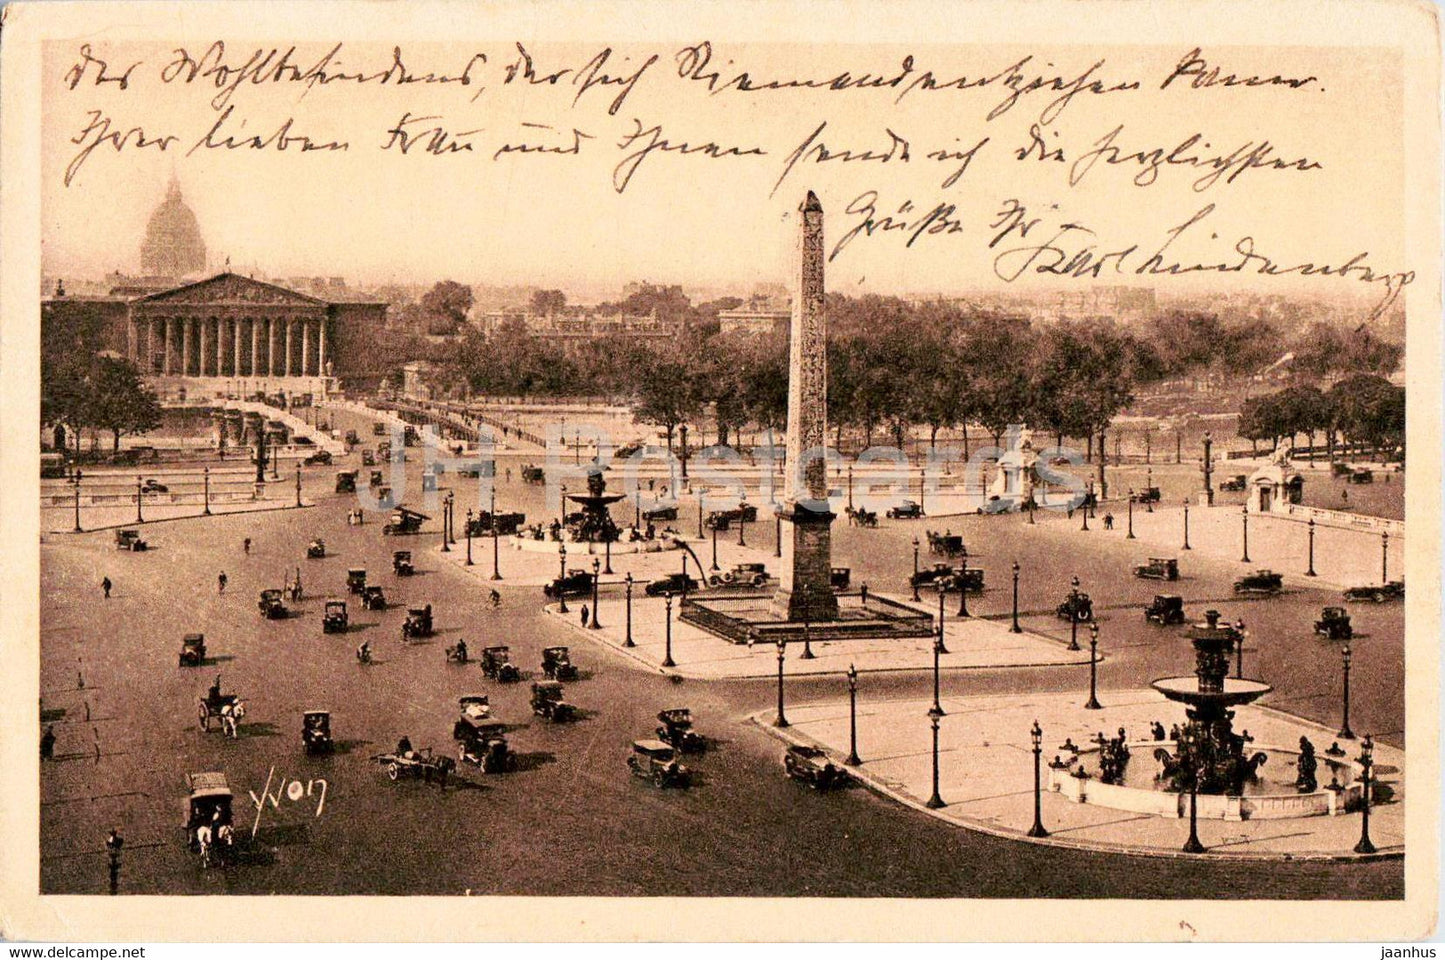 Paris en Flanant - La Place de la Concorde - 70 - old postcard - 1929 - France - used - JH Postcards